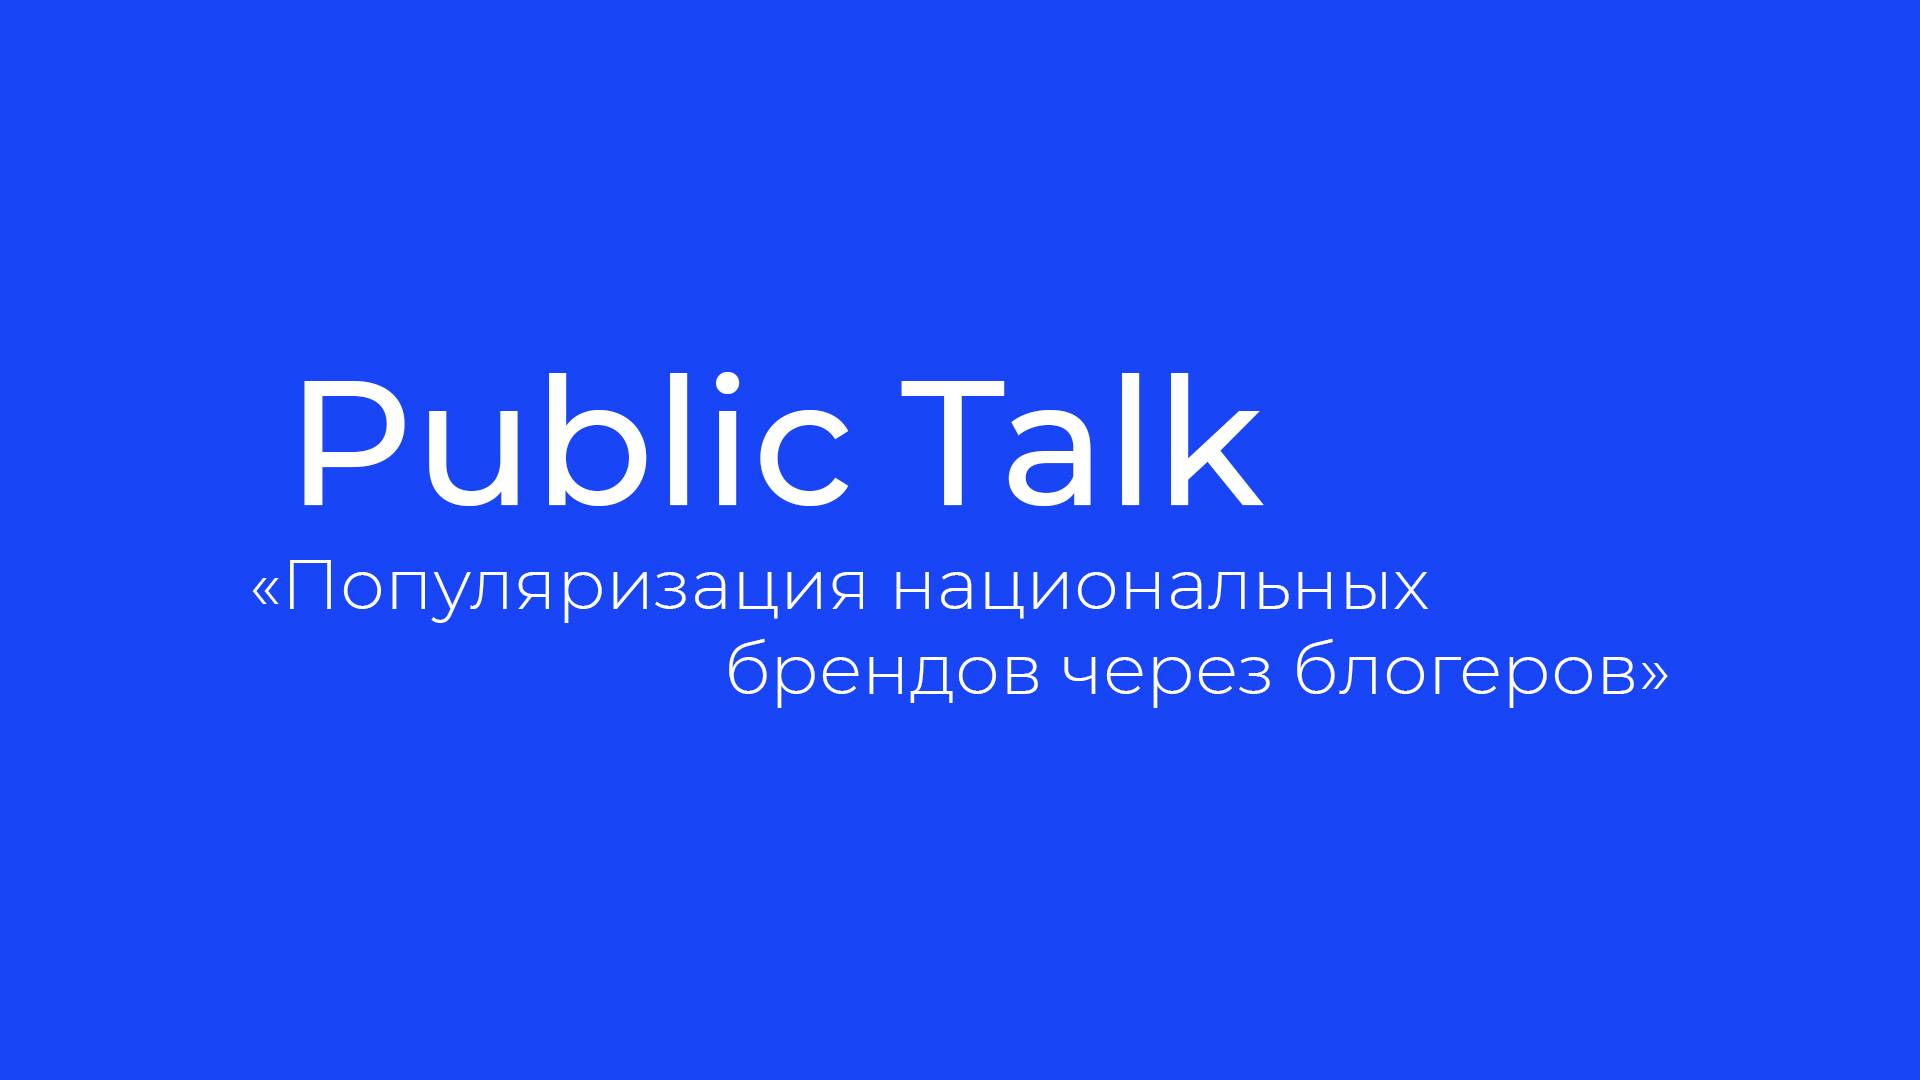 Public Talk "Популяризация национальных брендов через блогеров"